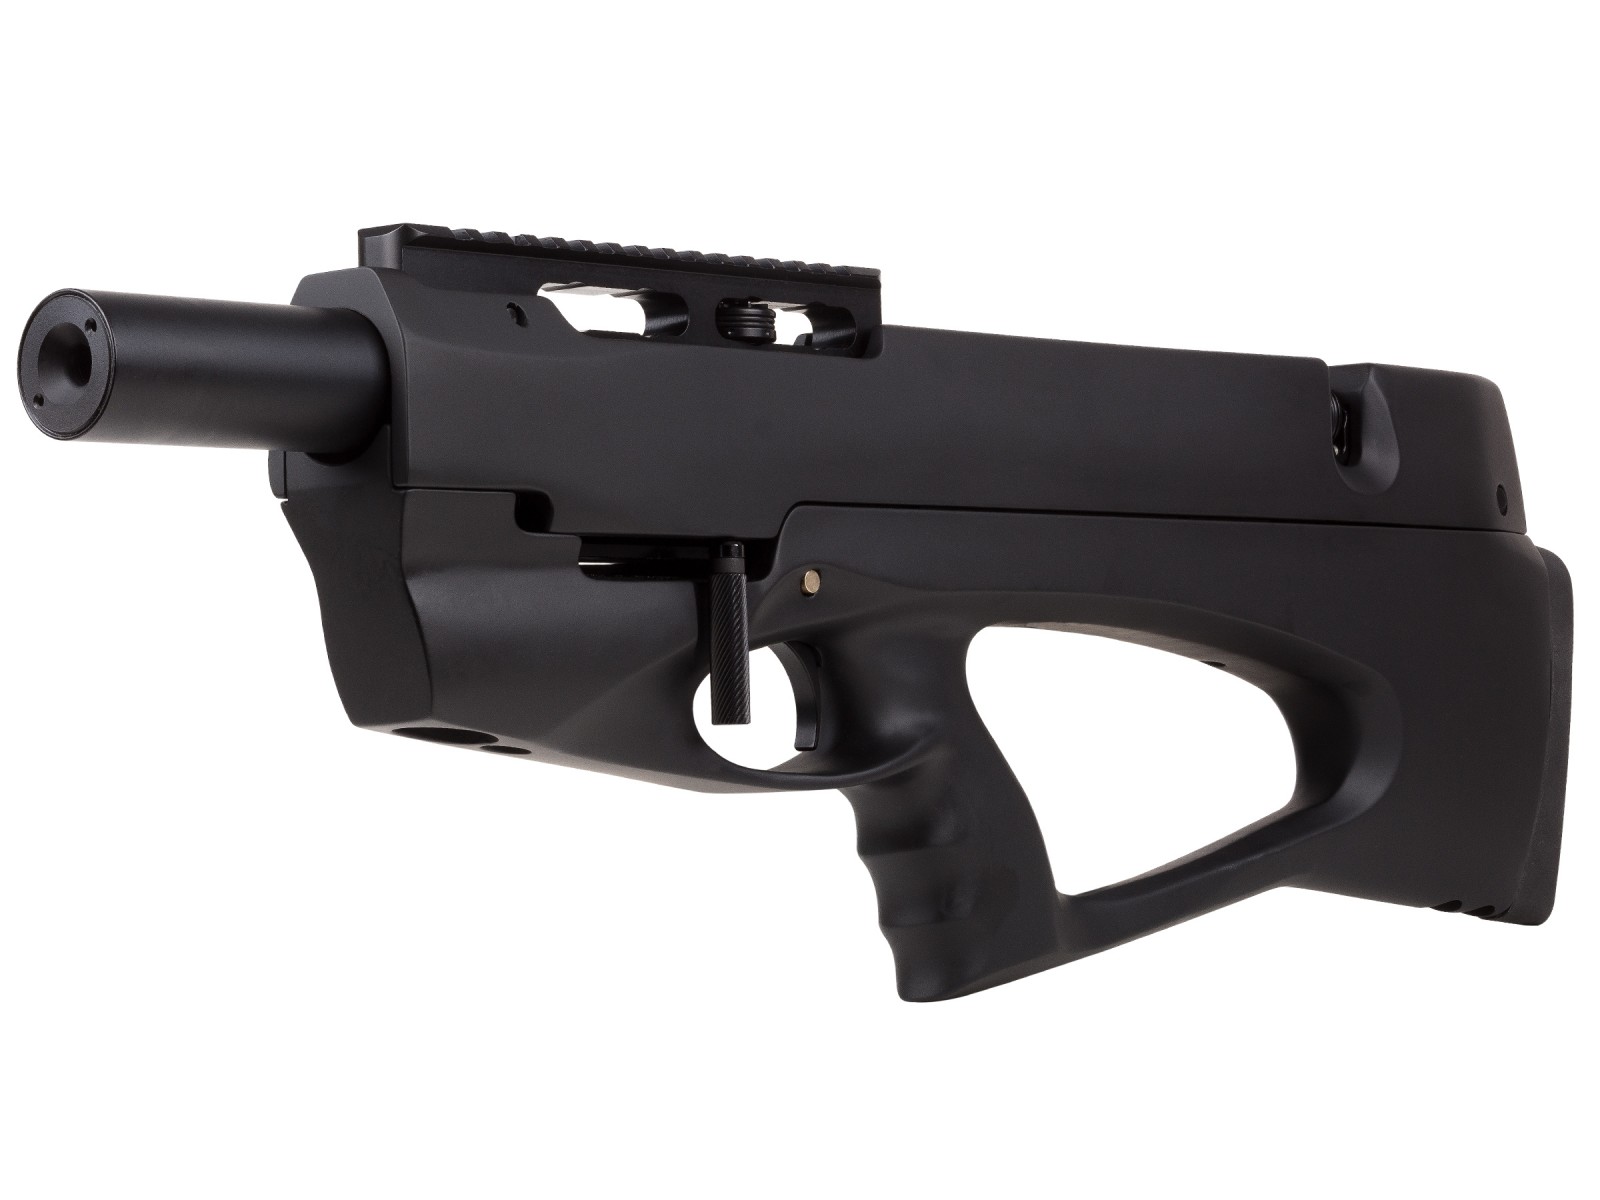 Ataman BP17 Soft-Touch .22 Air Rifle, Black 0.22